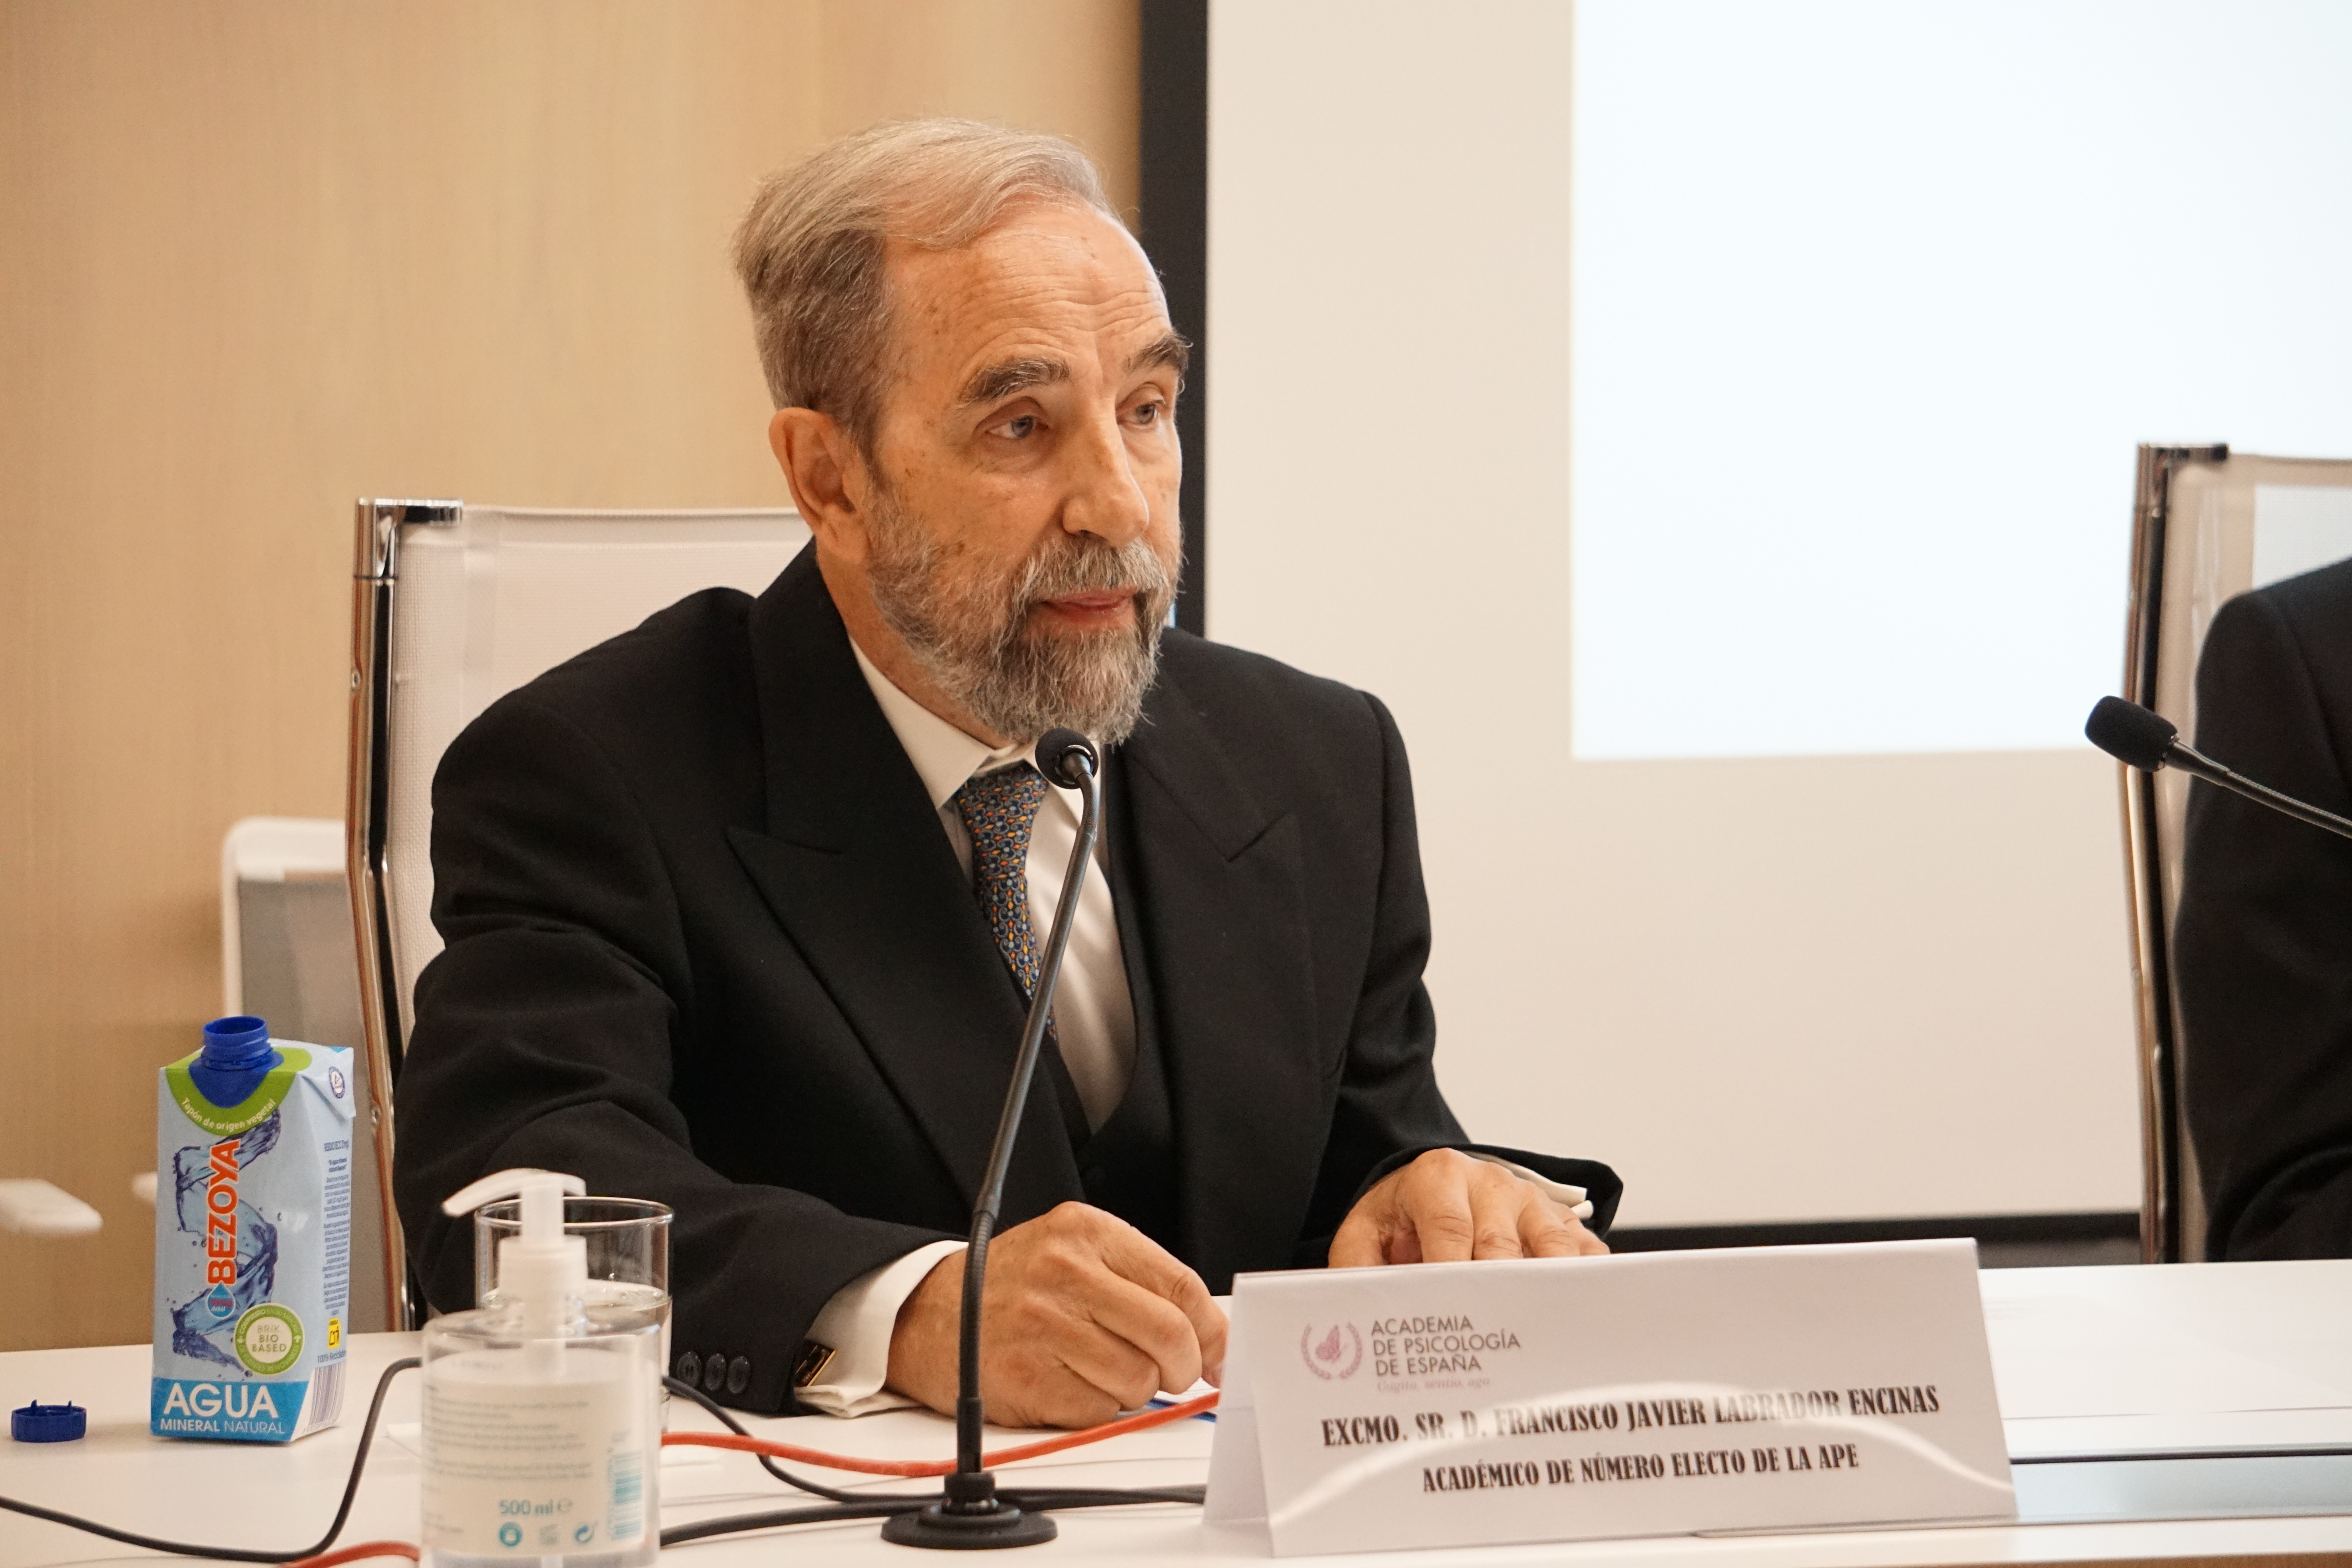 El Prof. Francisco Labrador ingresa en la Academia de Psicología de España - 3